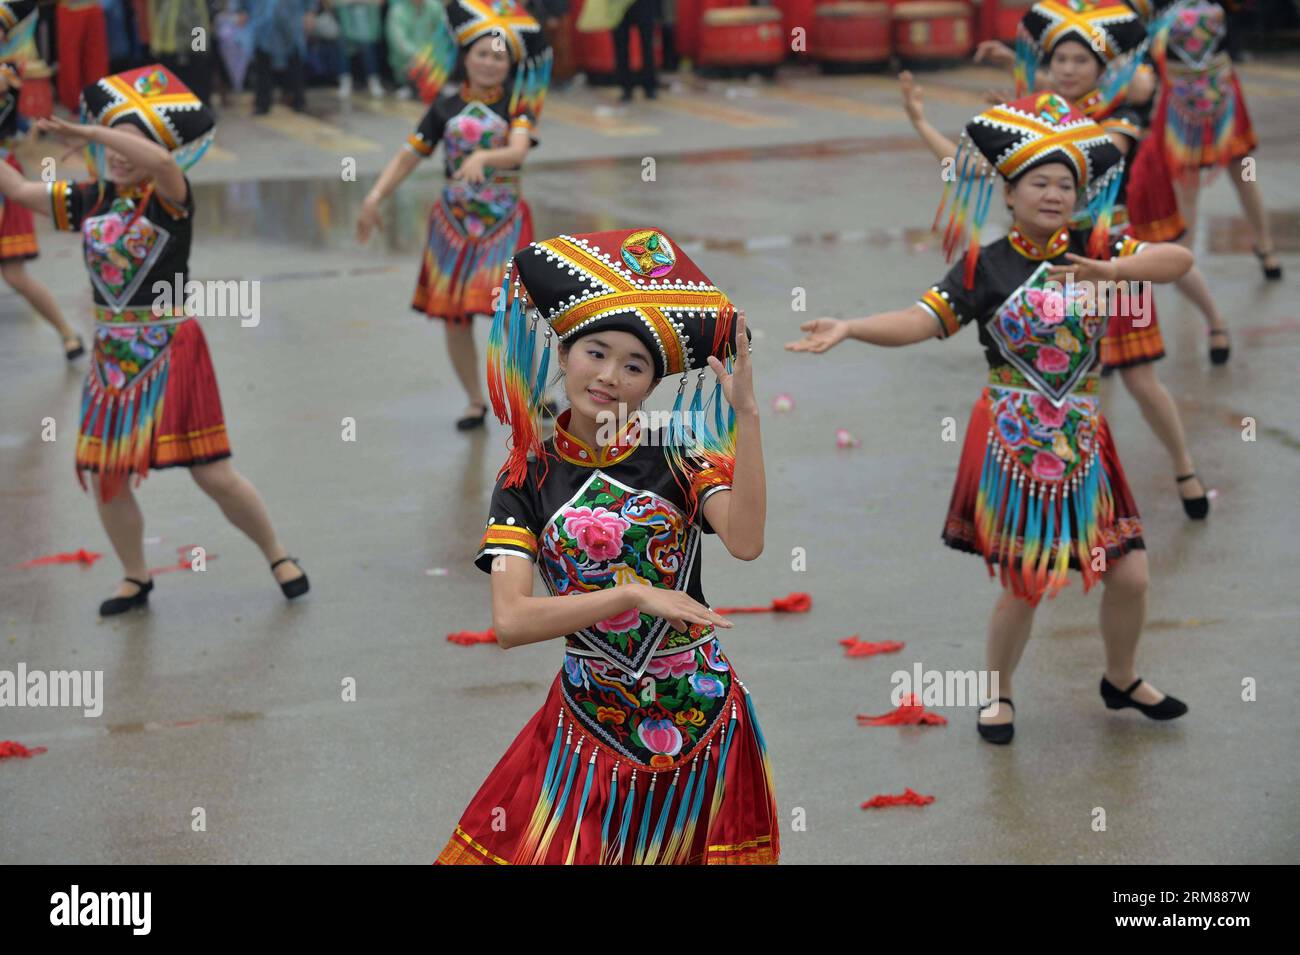 (140402) -- WUMING, 2. April 2014 (Xinhua) -- Menschen der ethnischen Gruppe Zhuang treten beim San Yue San Festival im Wuming County, südchinesische autonome Region Guangxi Zhuang, 2. April 2014 auf. Das Festival, das am 3. Tag des 3. Monats im chinesischen Mondkalender stattfindet, wird von Menschen vieler ethnischer Gruppen in China gefeiert. (Xinhua/Zhou Hua) (zc) CHINA-GUANGXI-WUMING-SAN YUE SAN (CN) PUBLICATIONxNOTxINxCHN Wuming 2. April 2014 XINHUA-Prominente der Zhuang-Gruppe treten AUF dem San Yue San Festival im Wuming County Südchina S Guangxi Zhuang Autonomous Region 2. April 201 auf Stockfoto